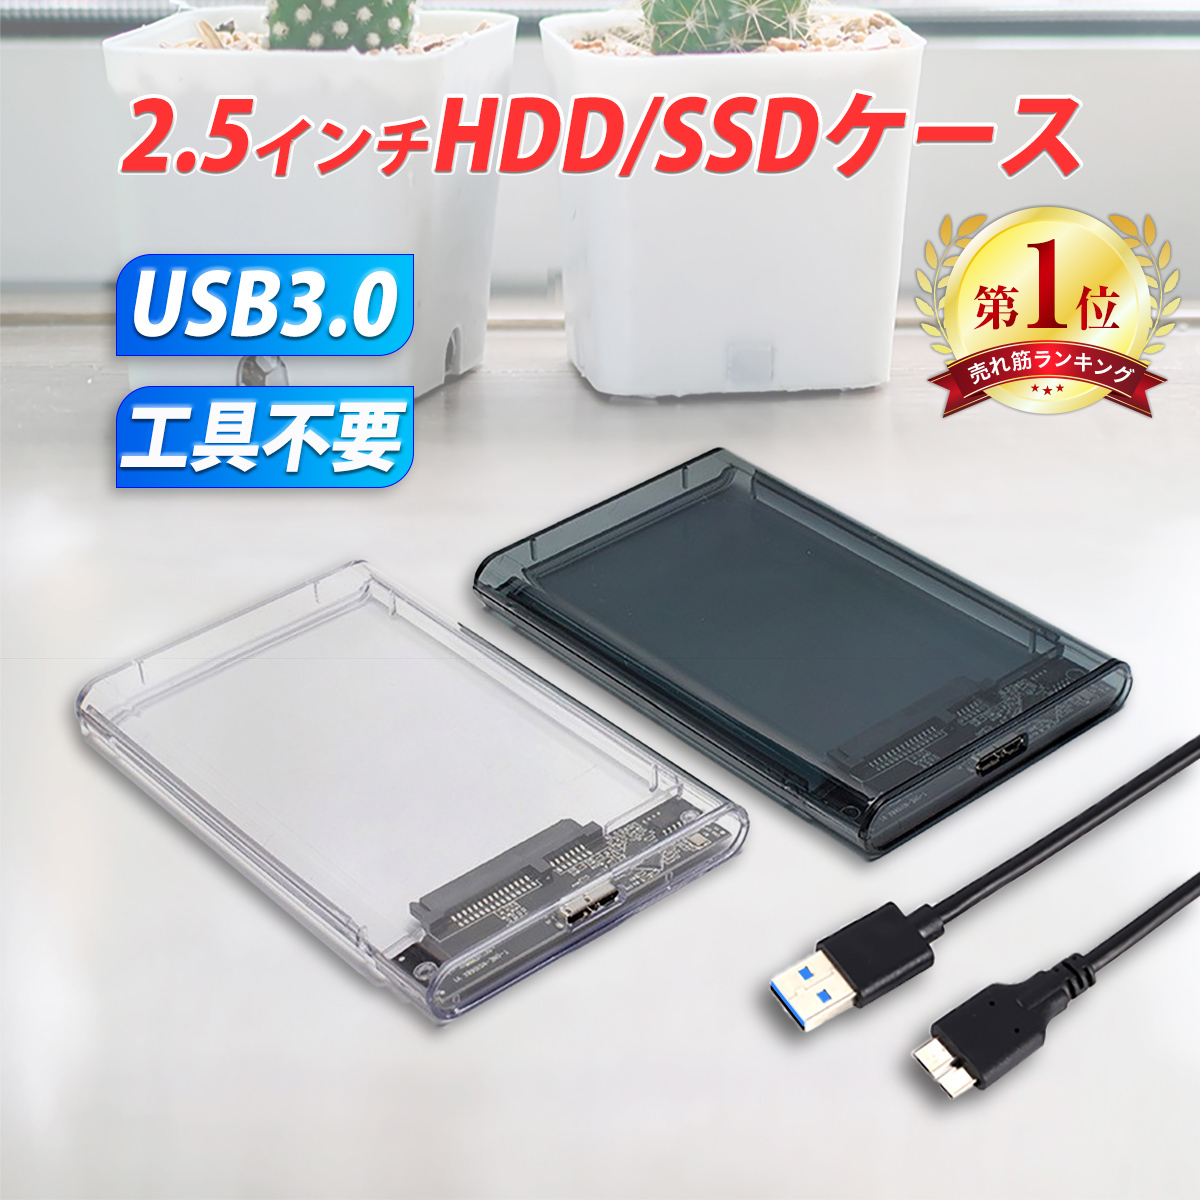 2.5 дюймовый HDD SSD установленный снаружи кейс USB3.0 прозрачный чистый чёрный SATA3.0 жесткий диск 5Gbps высокая скорость данные пересылка 3TB источник питания не необходимо портативный 